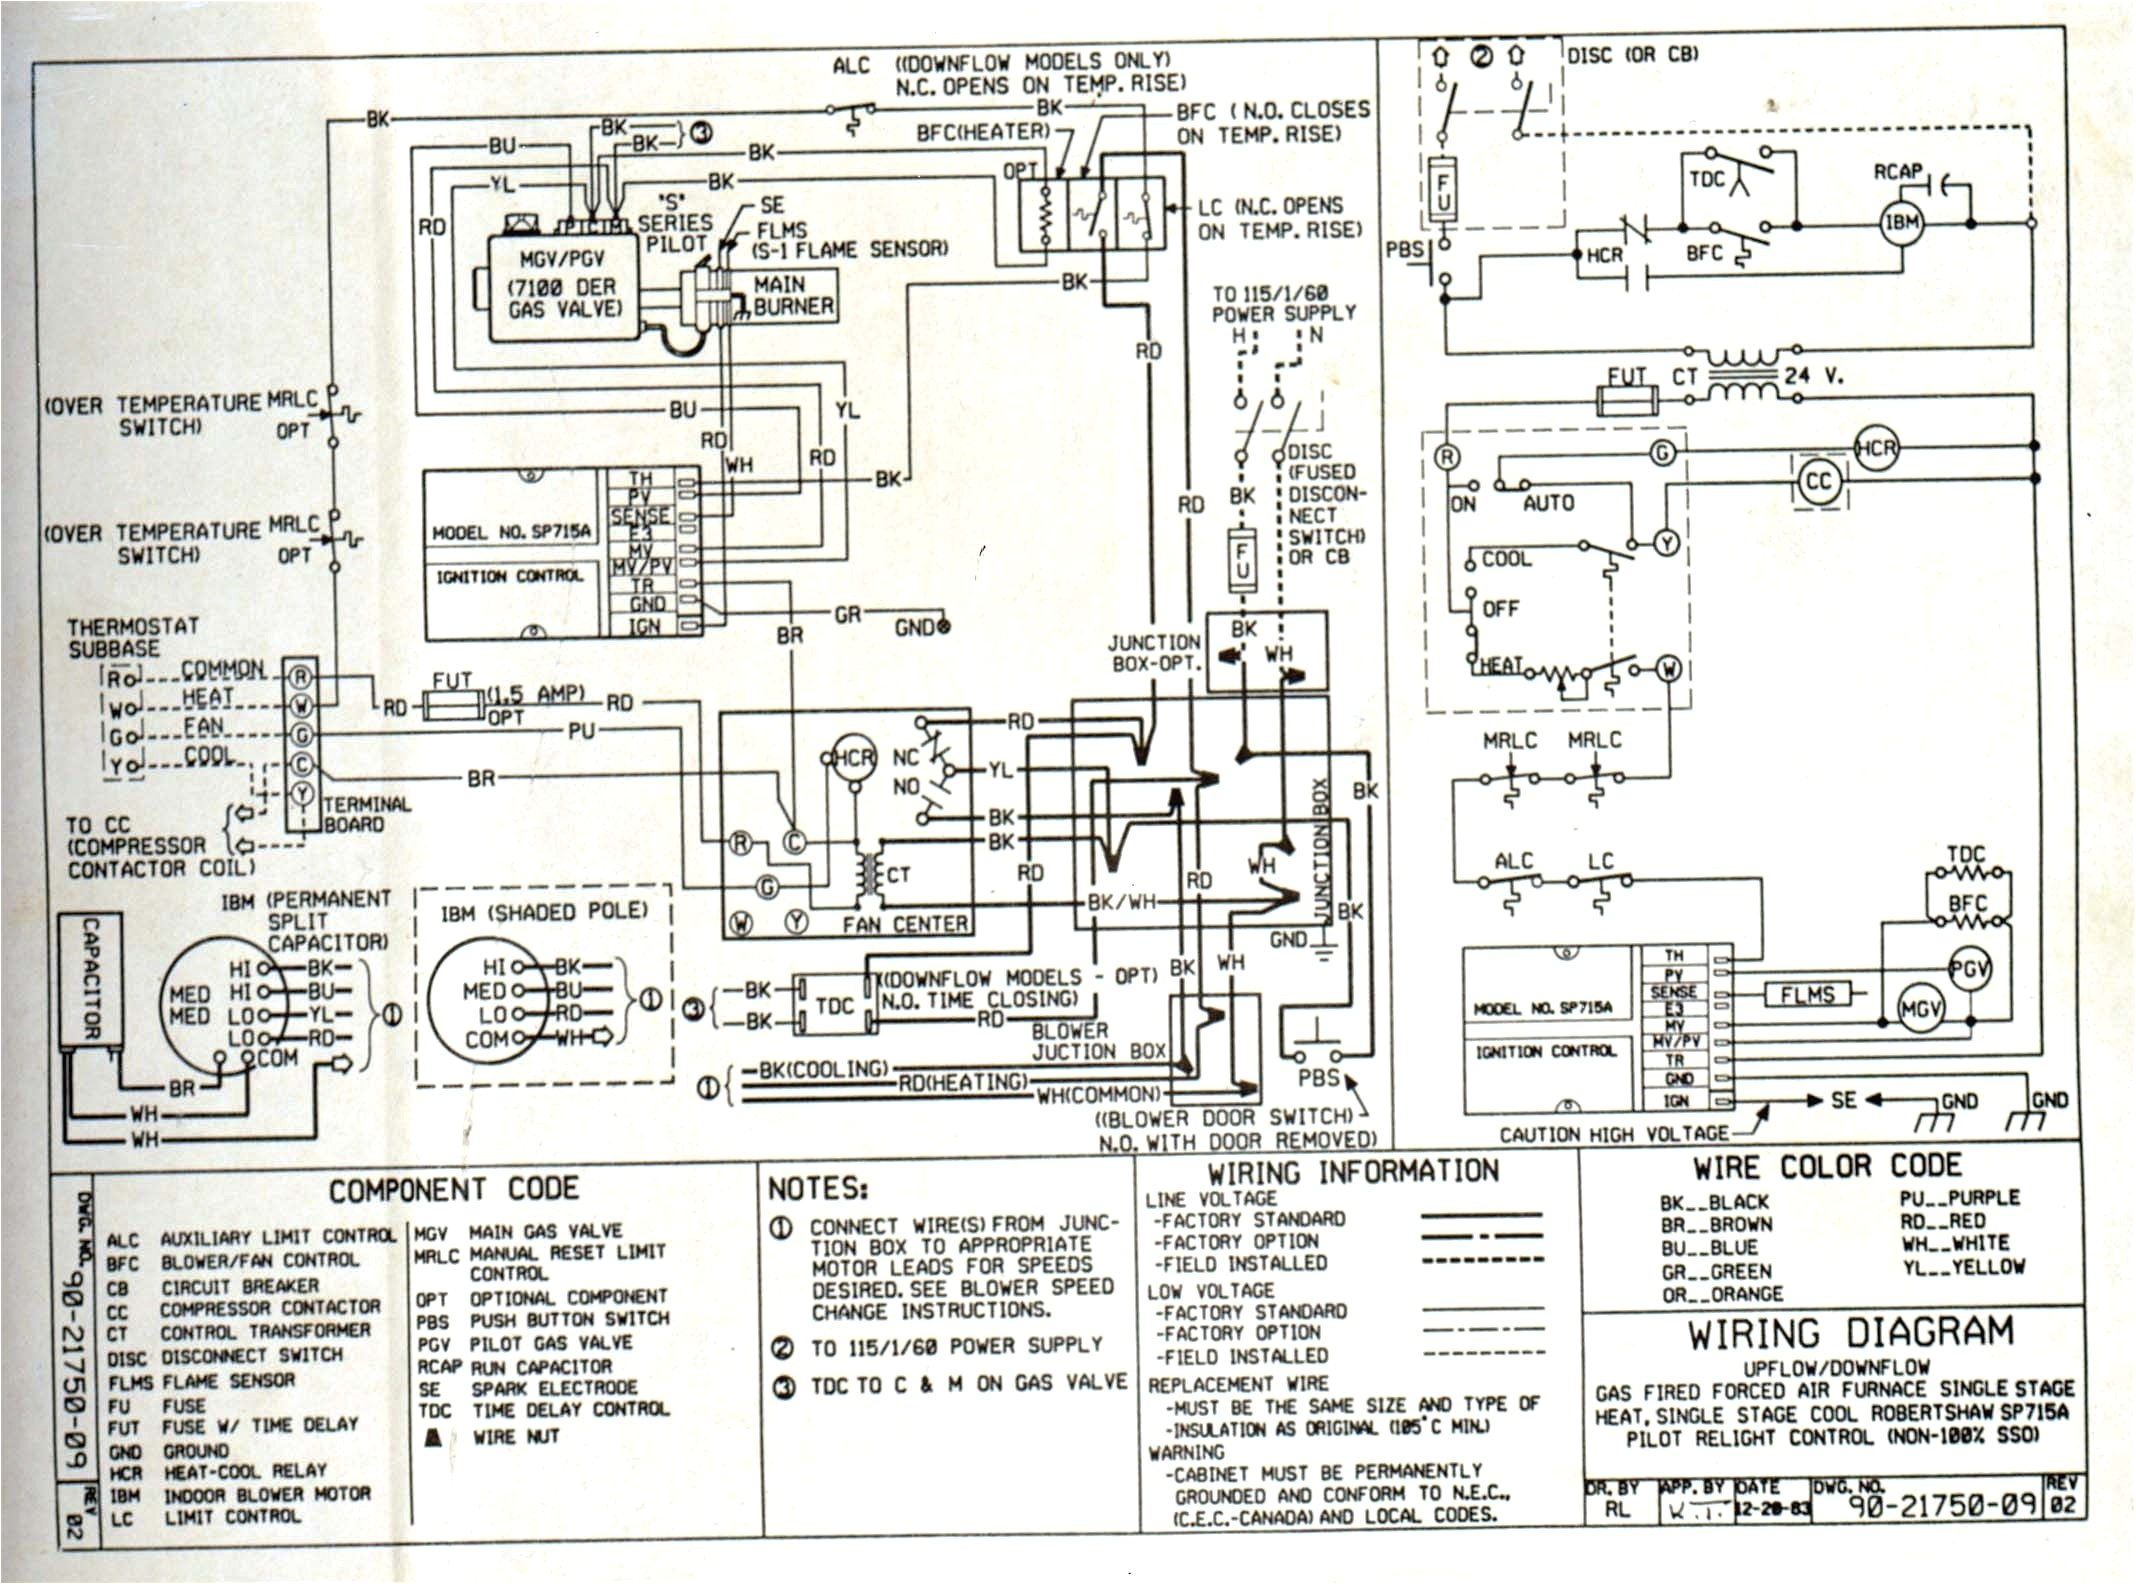 massey ferguson wiring diagram lovely massey ferguson 135 wiring diagram generator fresh bk wiring diagram jpg